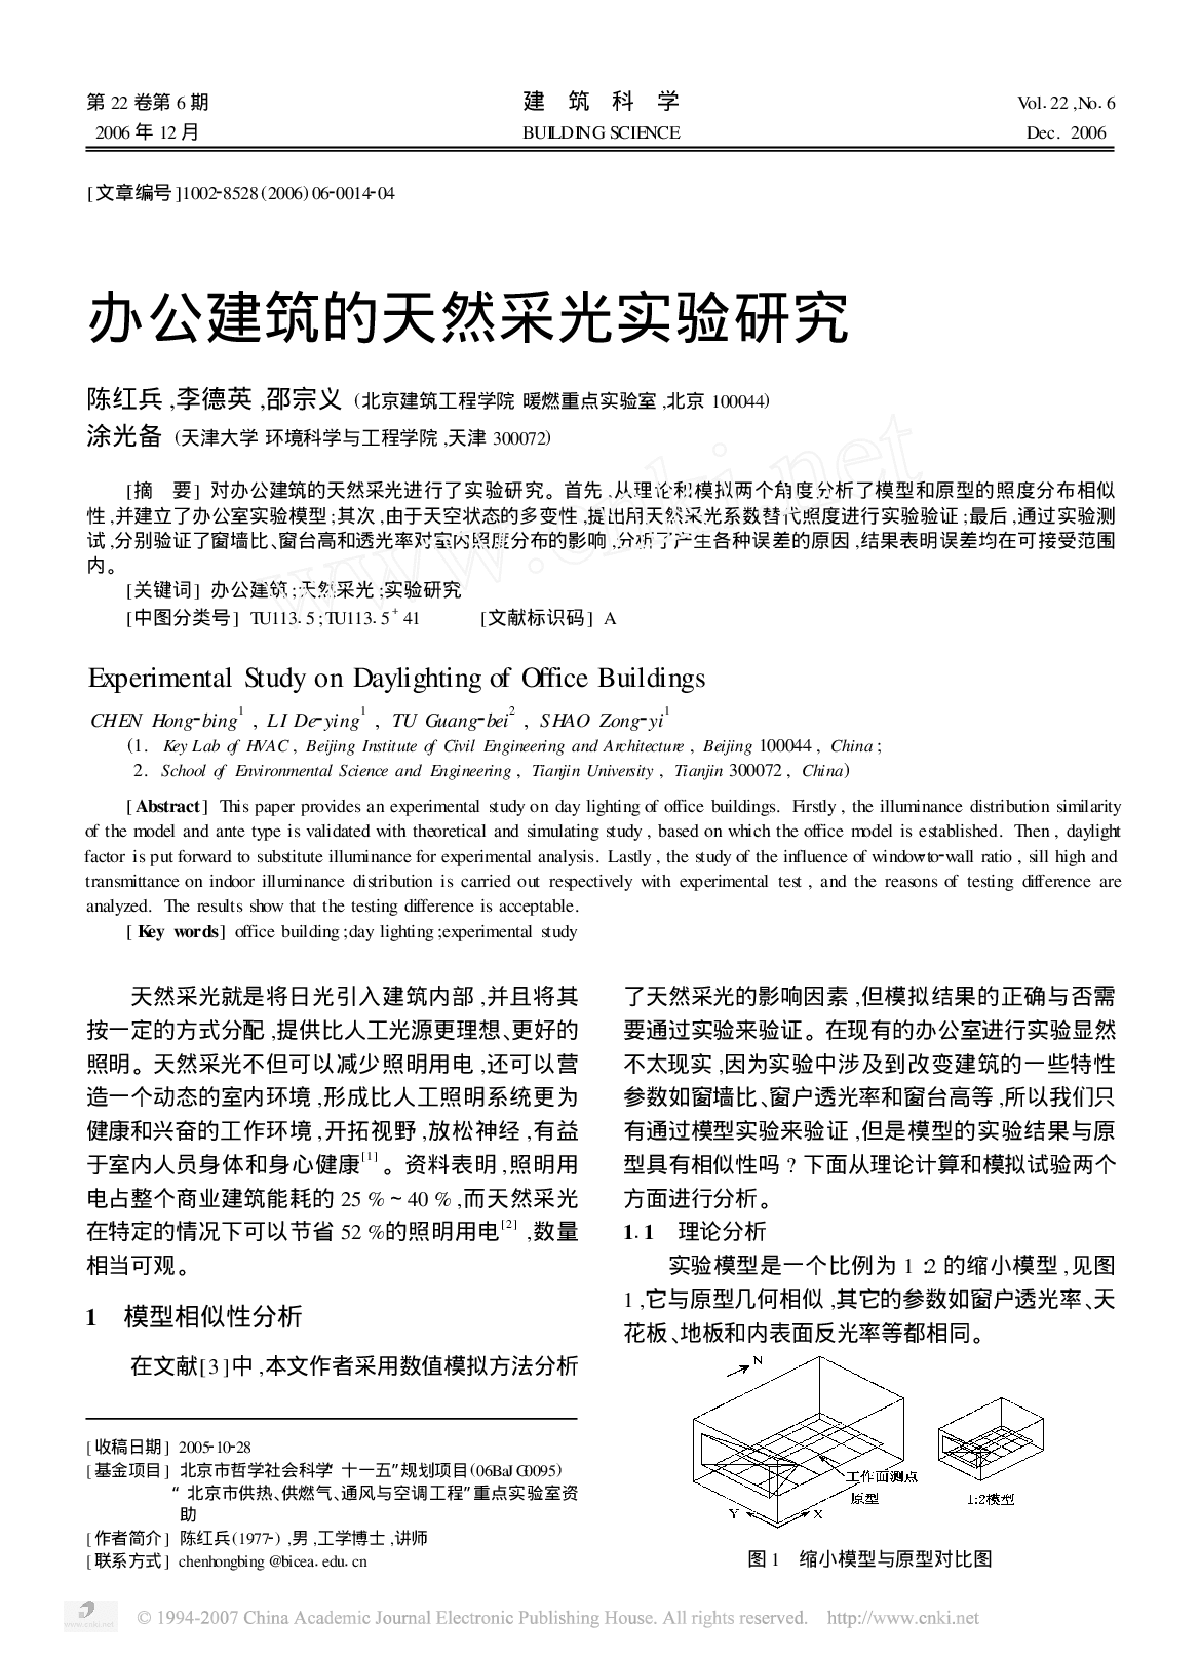 办公建筑的天然采光实验研究[1].pdf